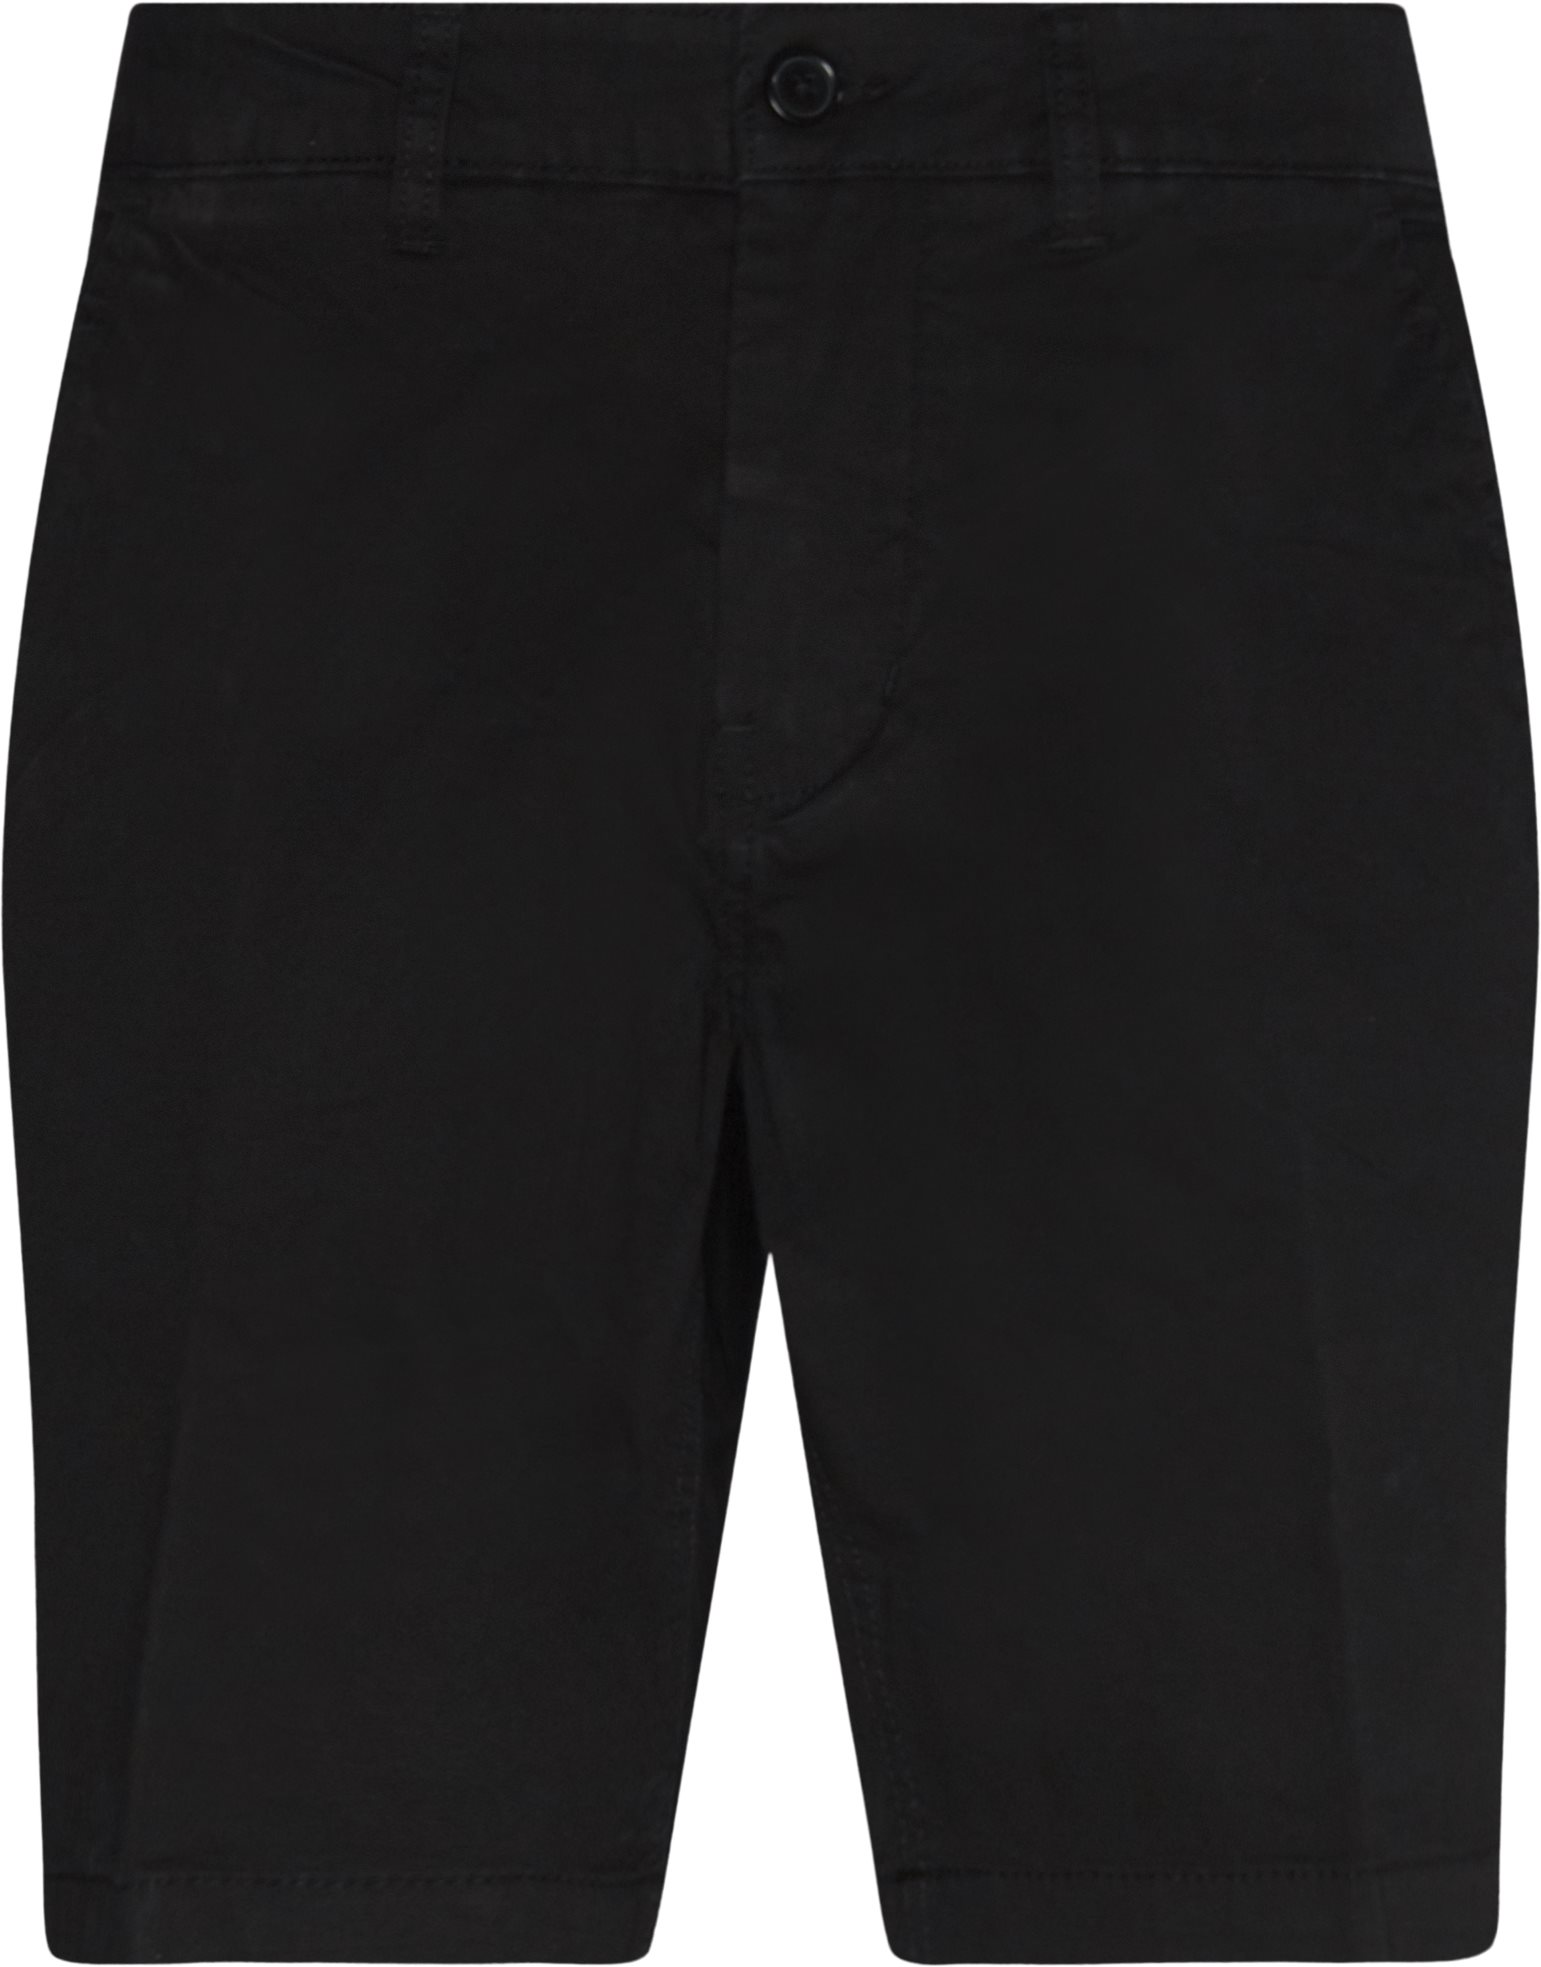 Riva shorts - Shorts - Regular fit - Svart